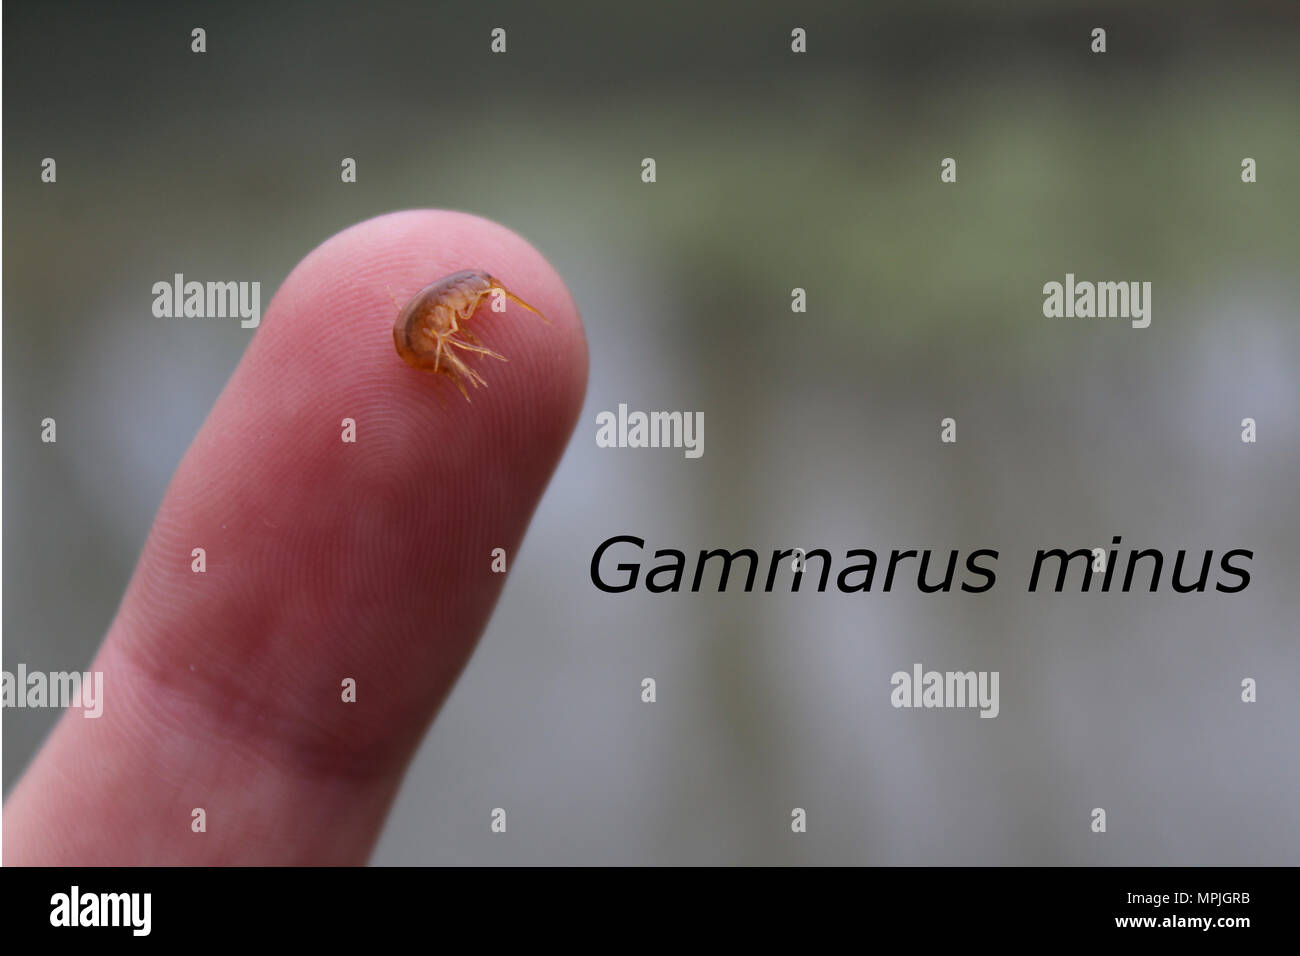 Un ejemplo de Gammarus minus (camarones de agua dulce) que se encuentran en un muelle alimenta corriente; Huntingdon County, Pennsylvania. Foto de stock